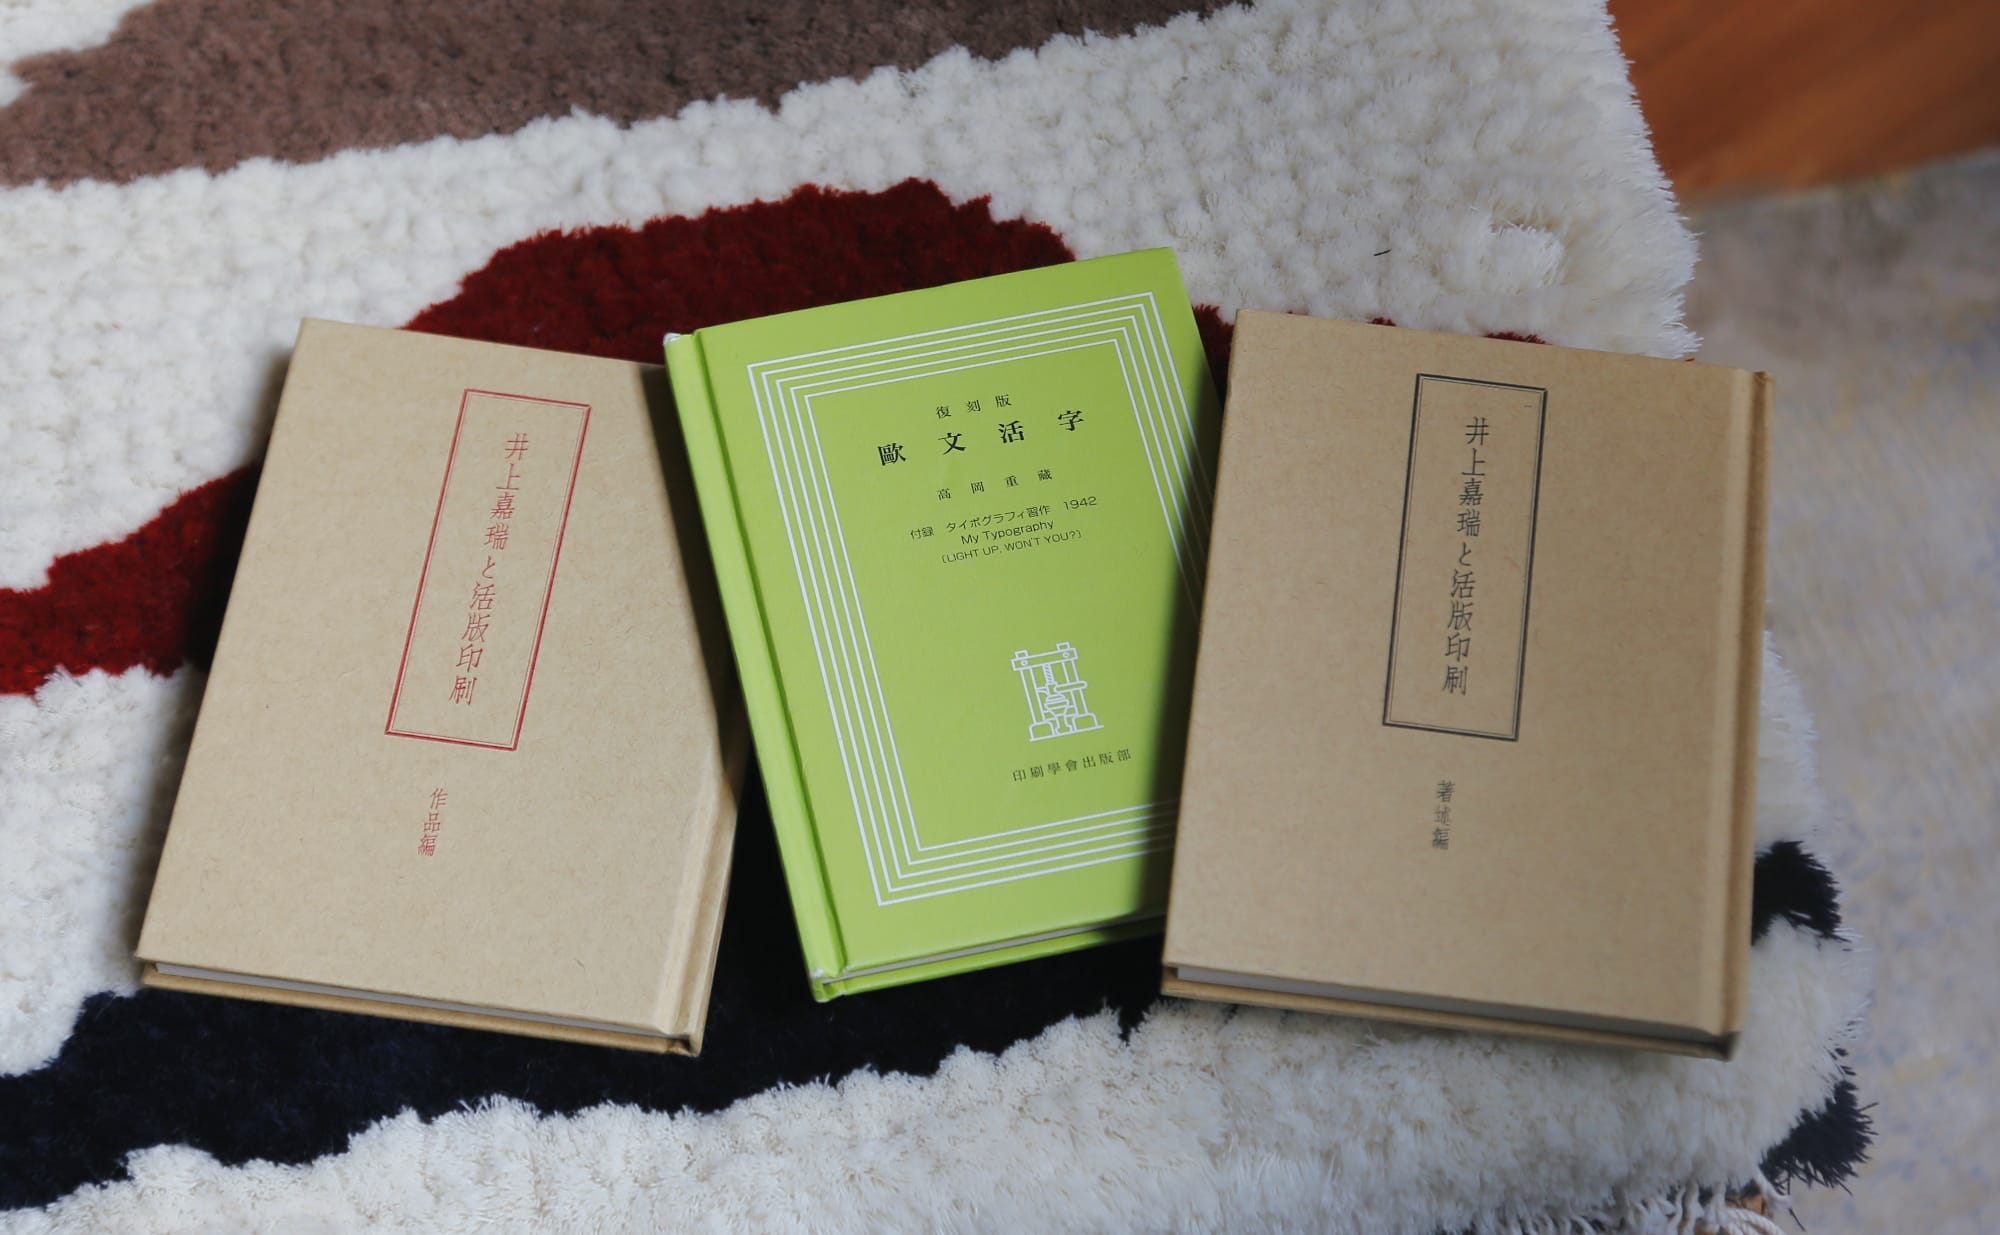 田舎臭い日本の欧文印刷」を変えた井上嘉瑞と活版印刷 | nostos books ノストスブックス